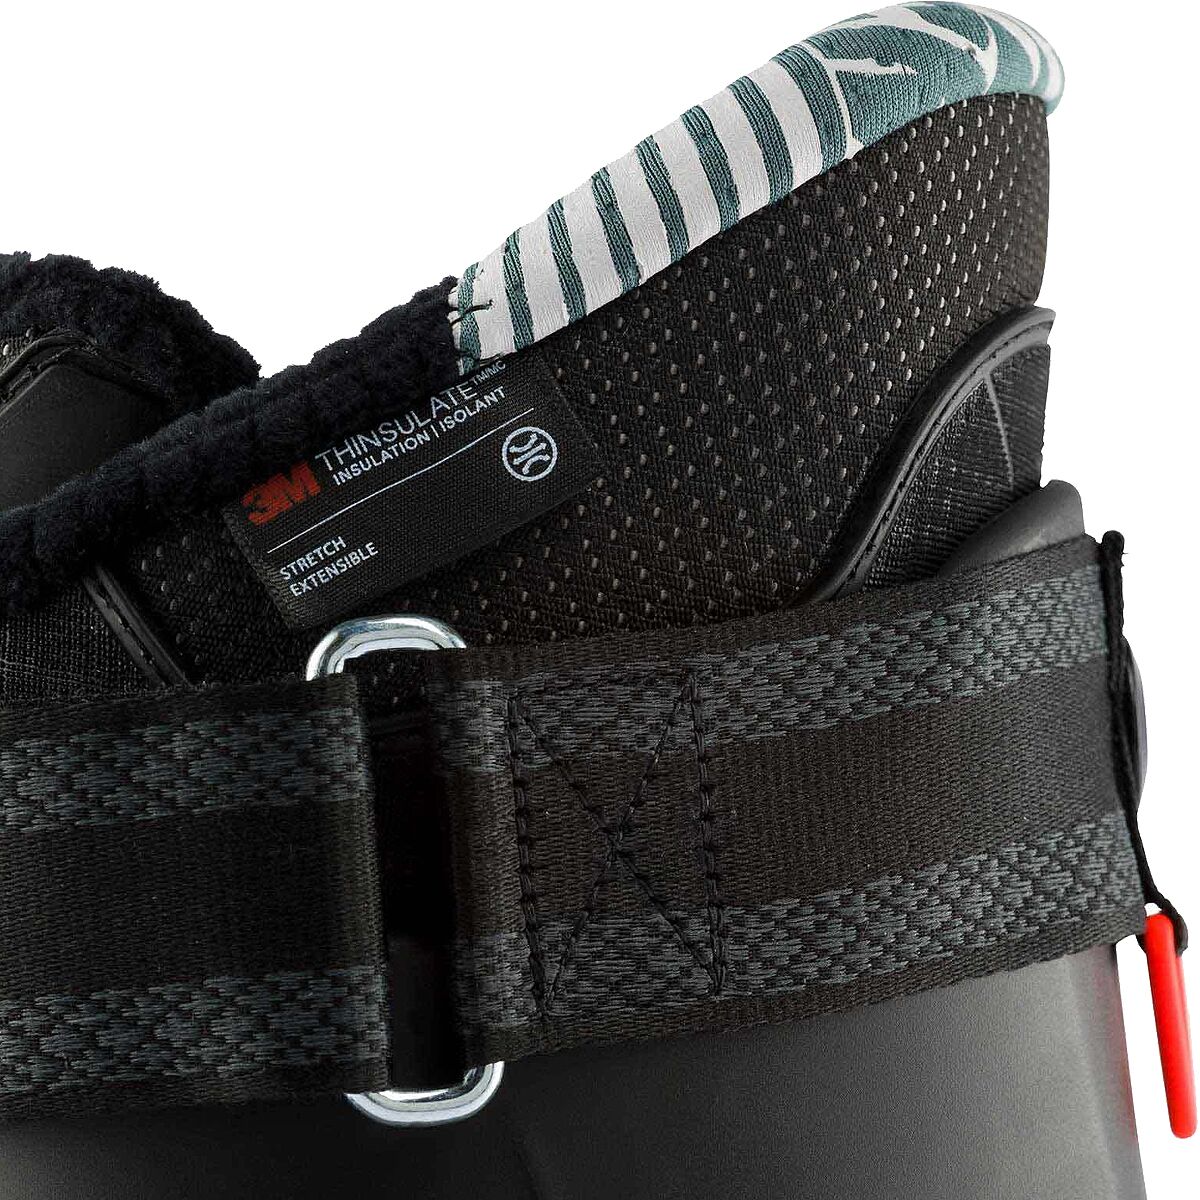 ROSSIGNOL - Chaussures Ski Homme Alltrack Pro 100 X Flex 100 - RBJ3510